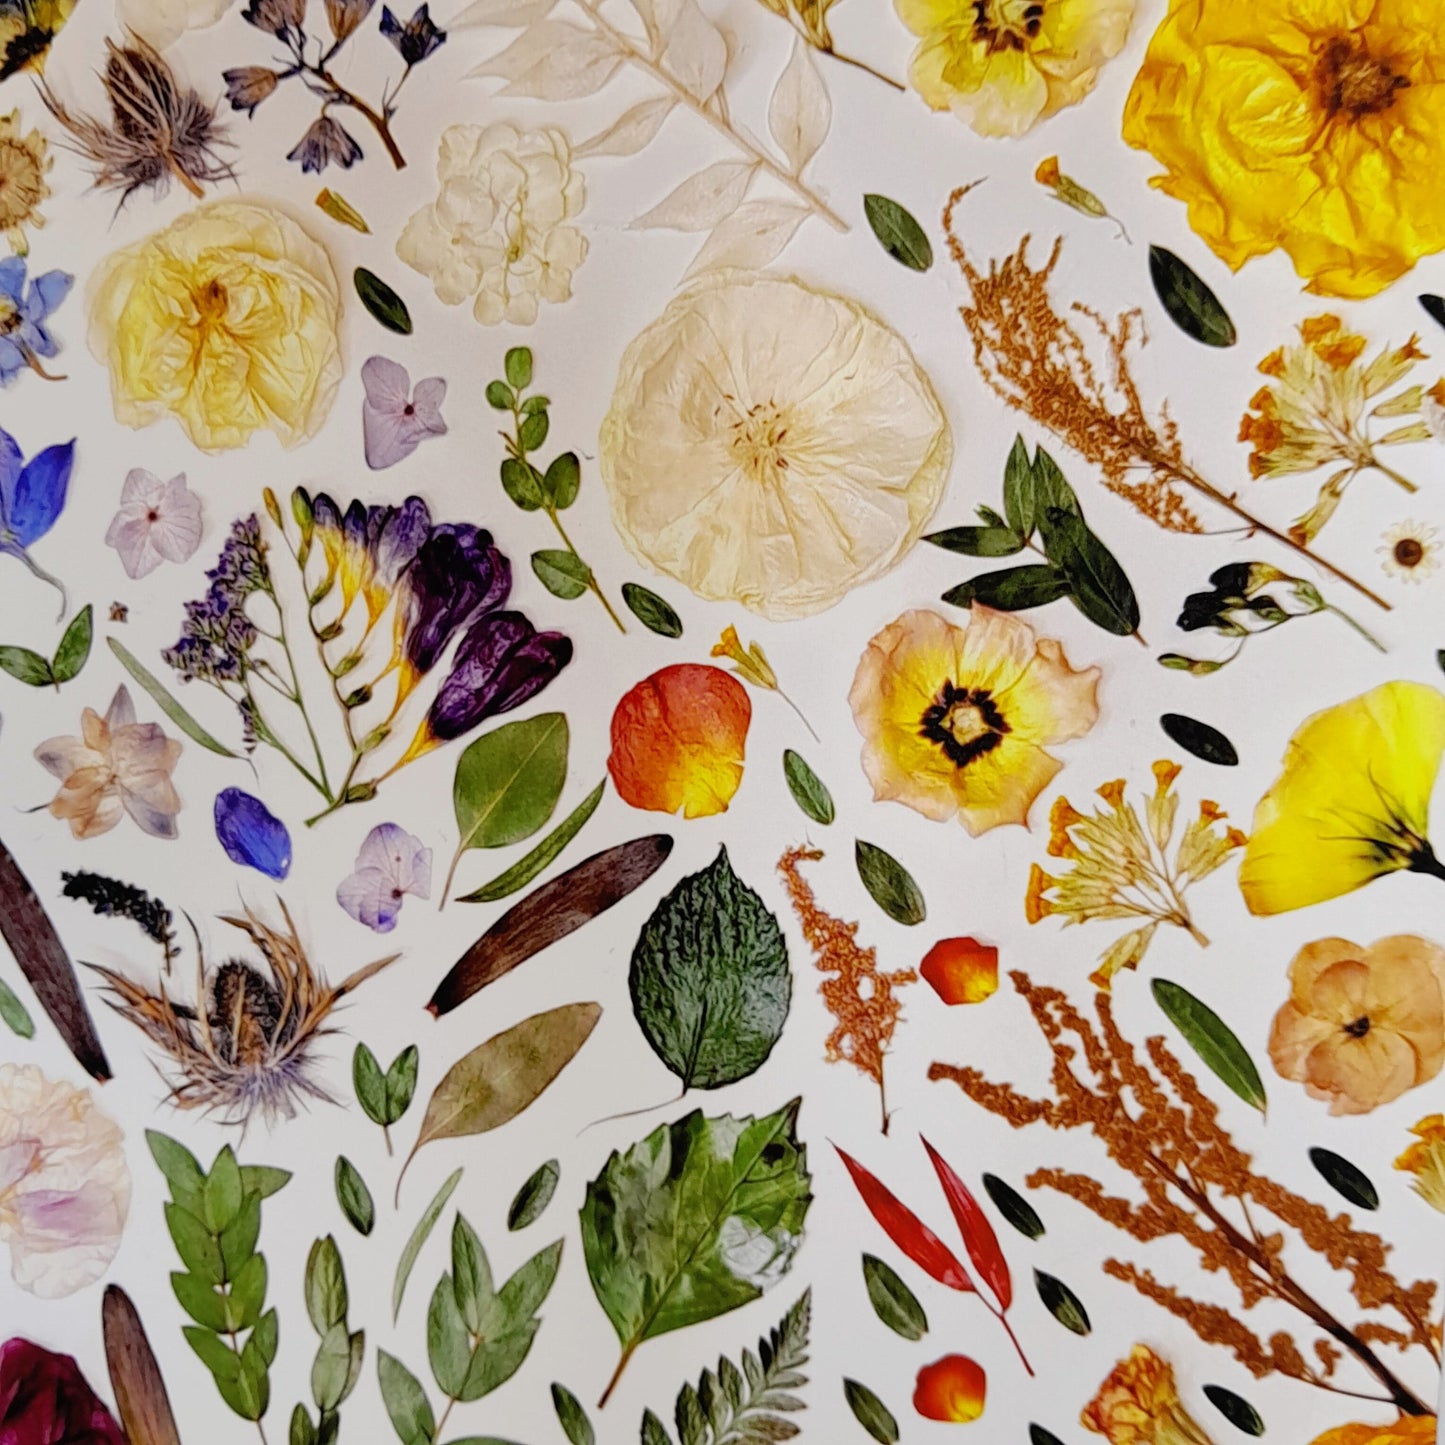 SIÓG Botanicals 'DRAÍOCHT' Fine Art Giclee Print